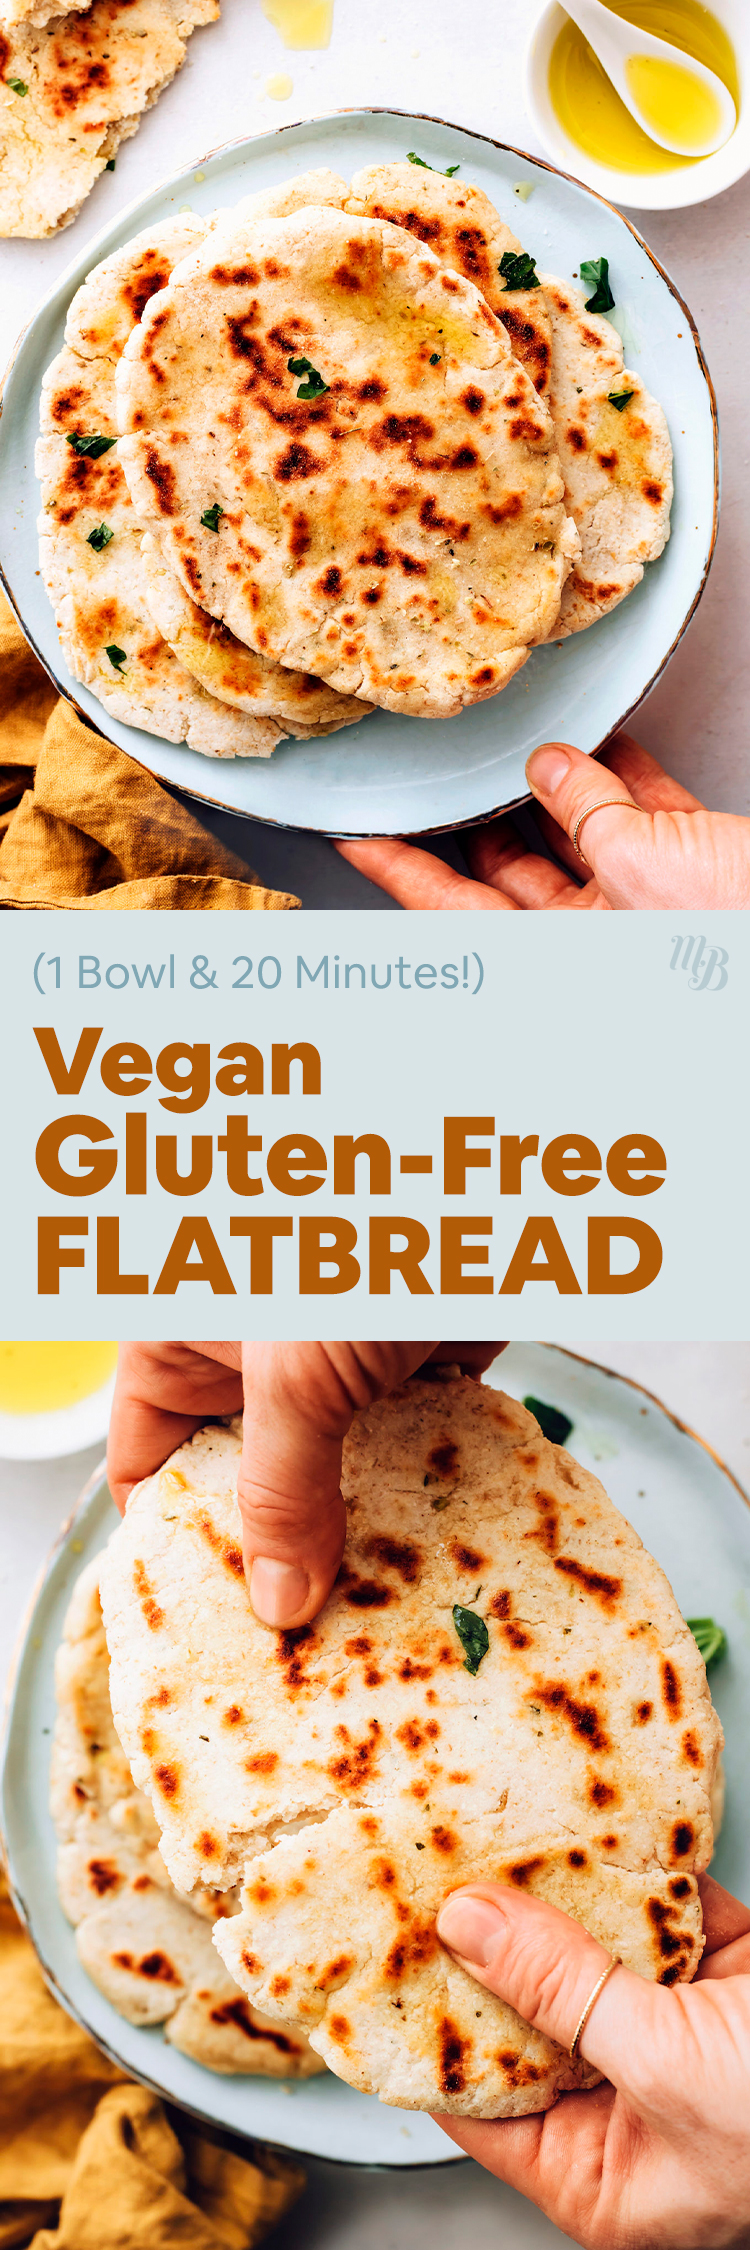 Gluten-Free Flatbread (1 Bowl, 20 Minutes!) - Minimalist Baker Recipes